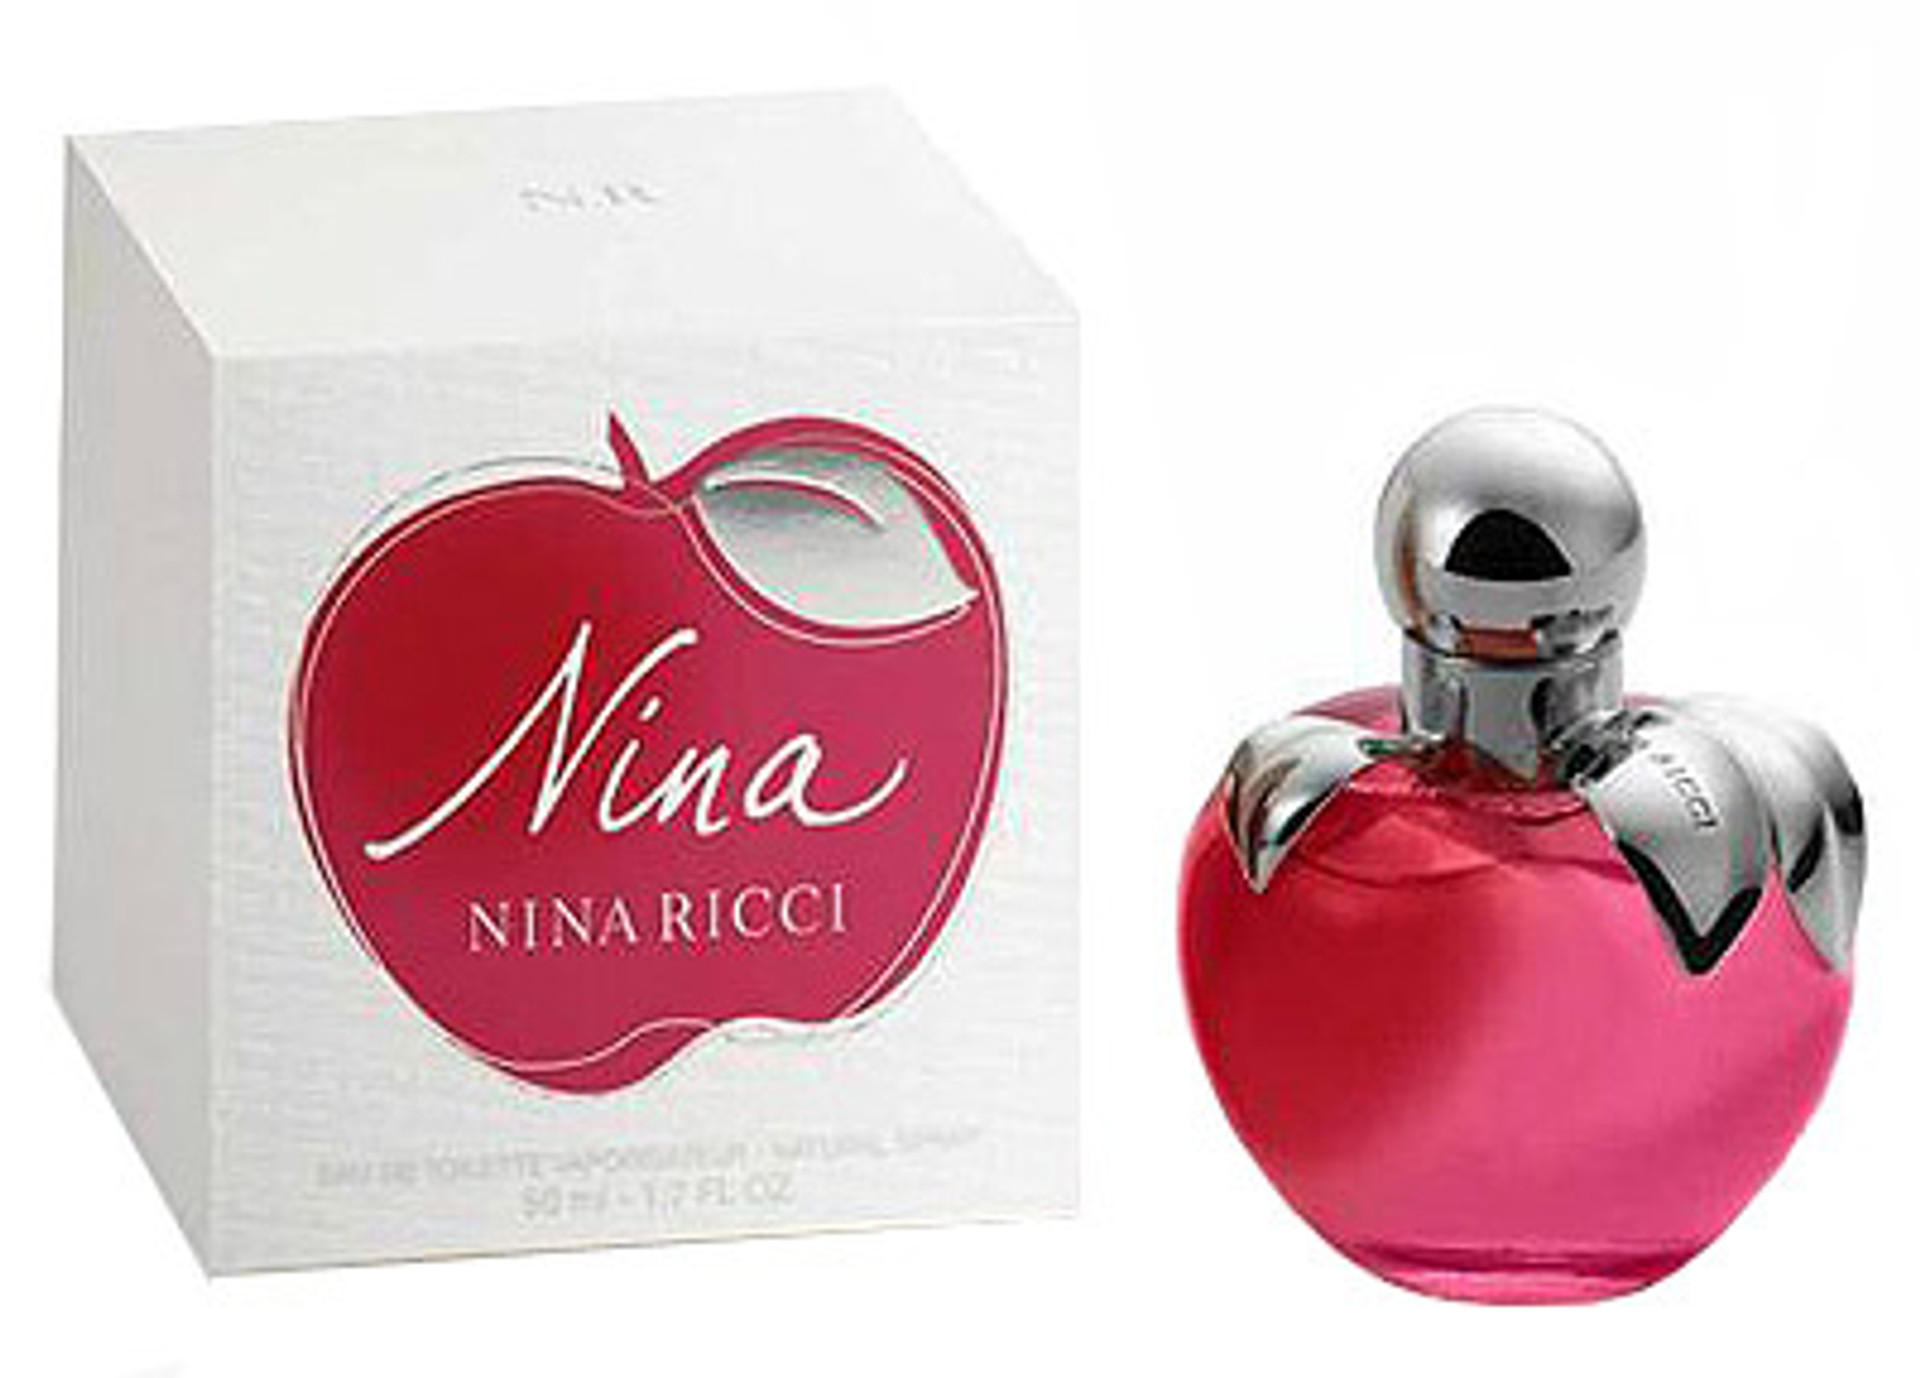 RICCI RICCI Perfume For Women by Nina Ricci 2.7 oz EDP Spray ...